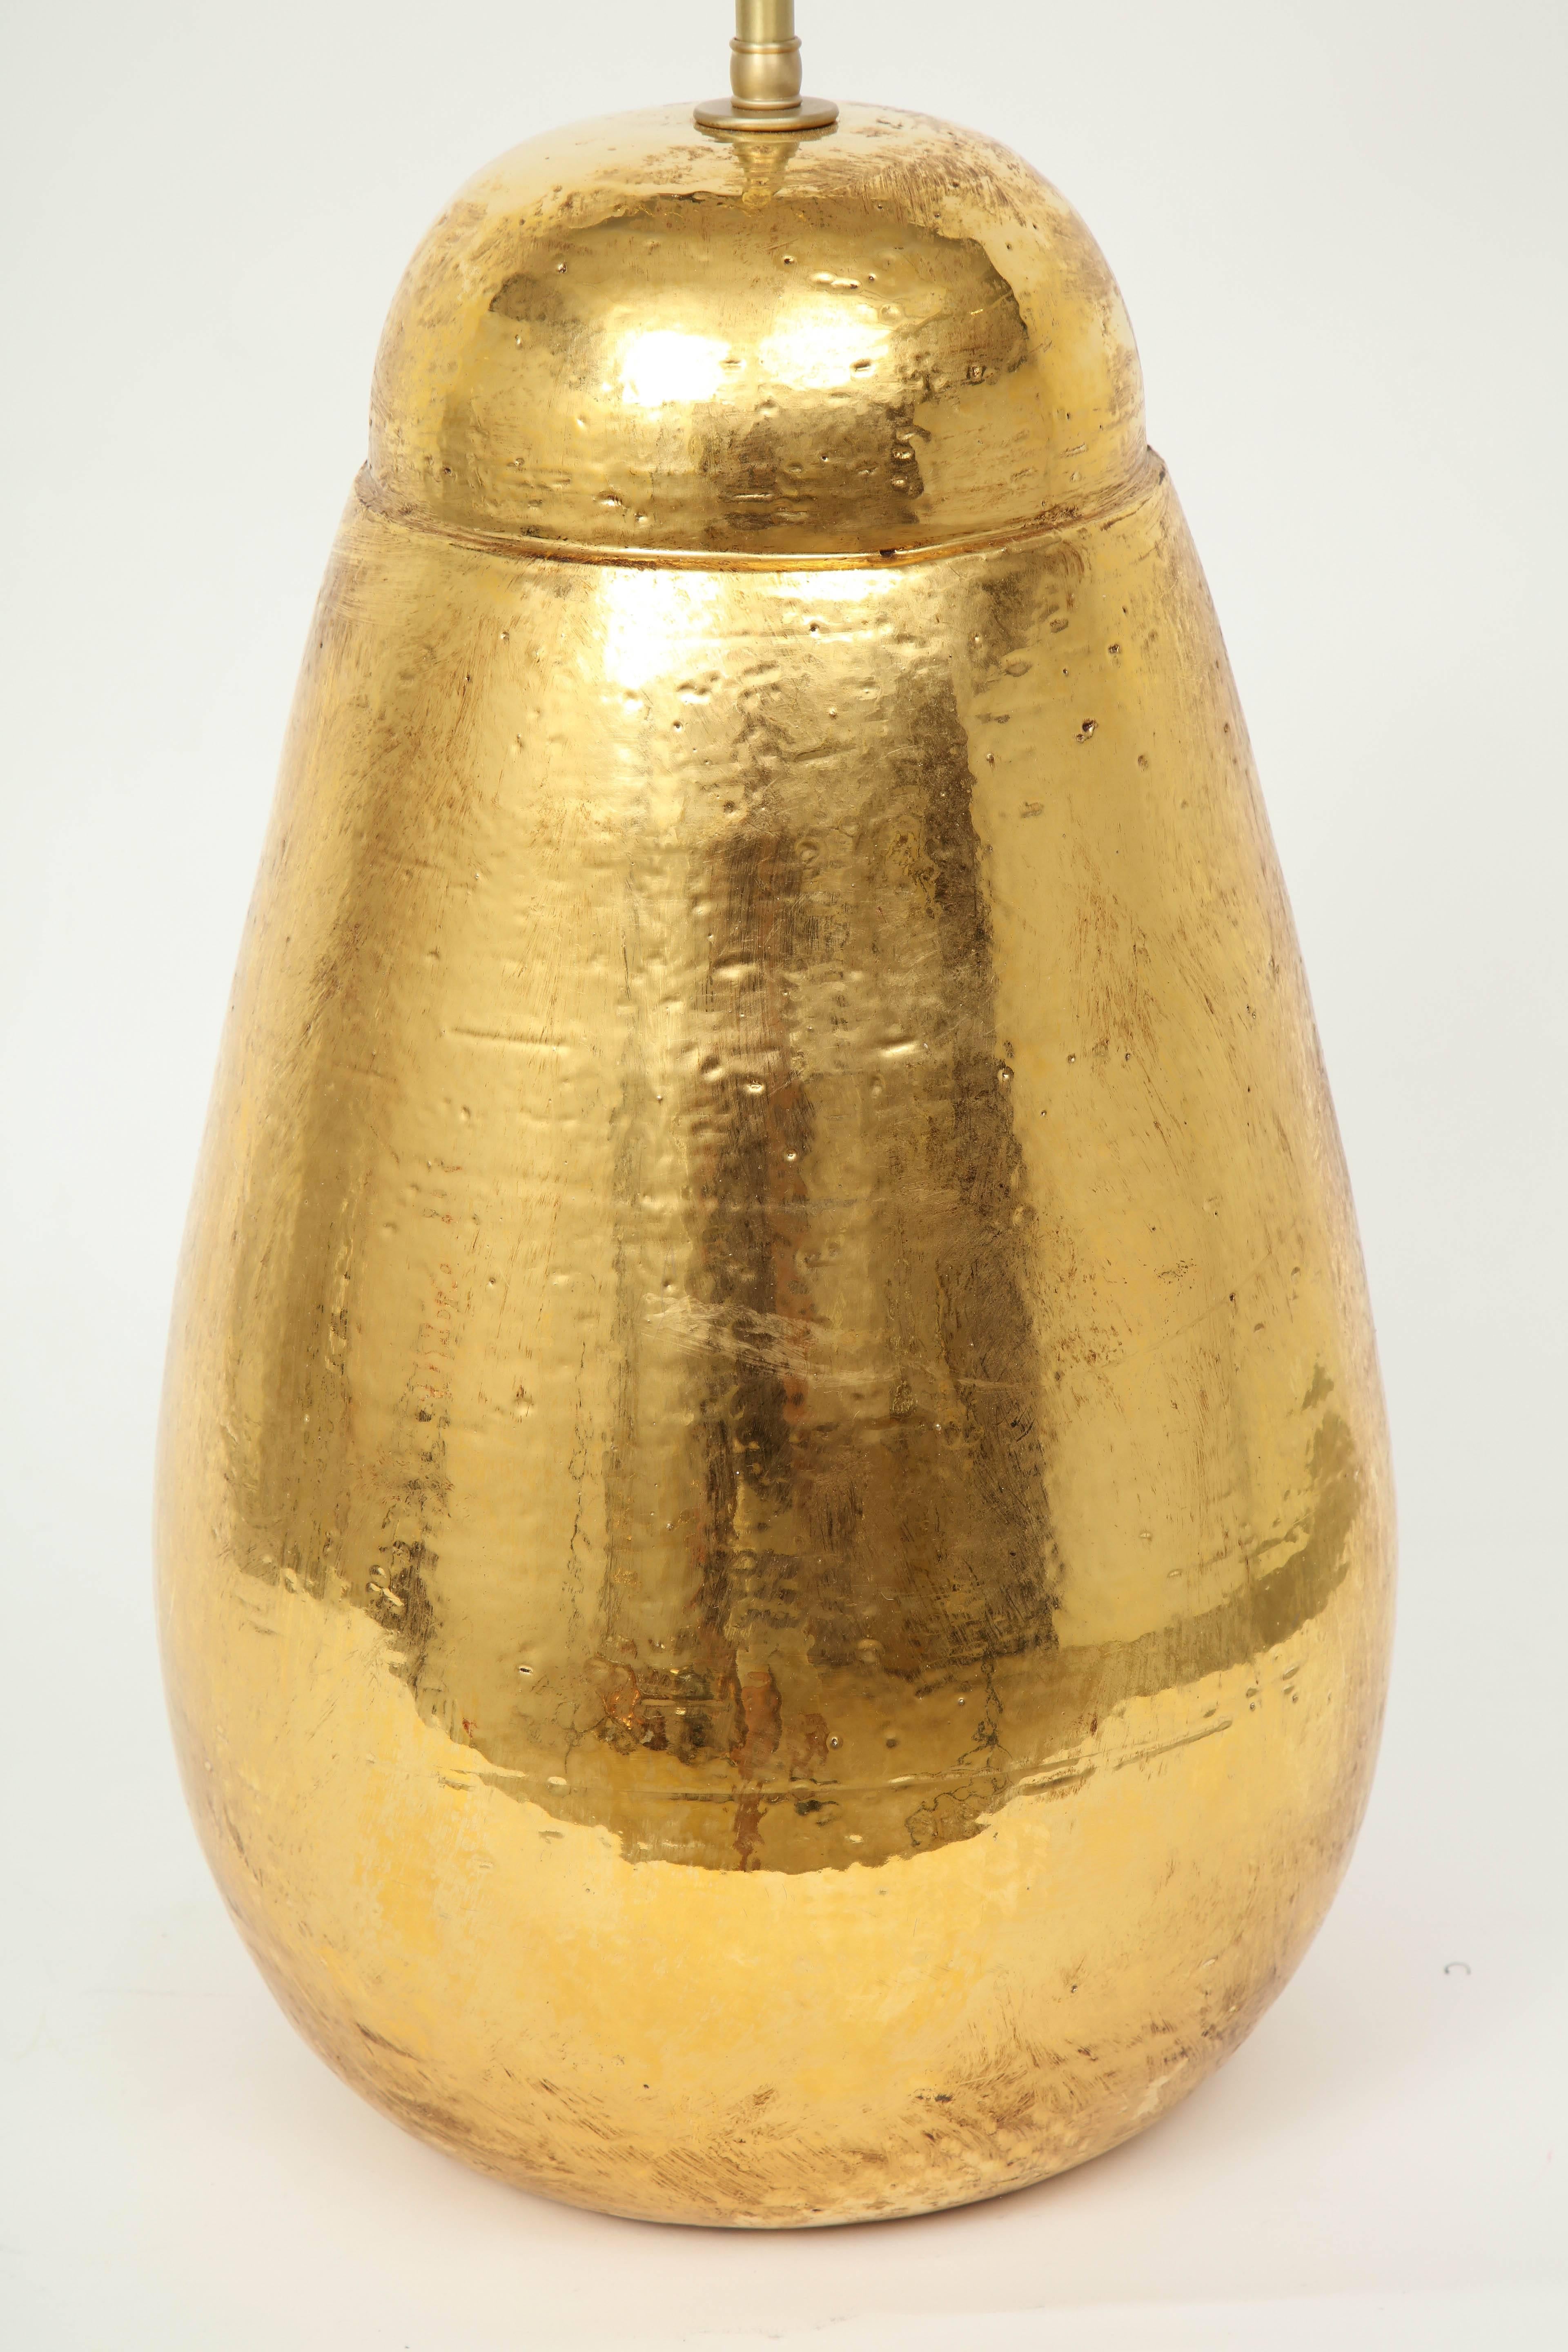 Seltenes Paar voluminöser, großformatiger Lampen mit strukturierter Oberfläche und 22-karätiger Goldglasur. Für den Gebrauch in den USA neu verdrahtet, mit Doppelkettensteckdosen aus Messing und goldenen Seidenkordeln.